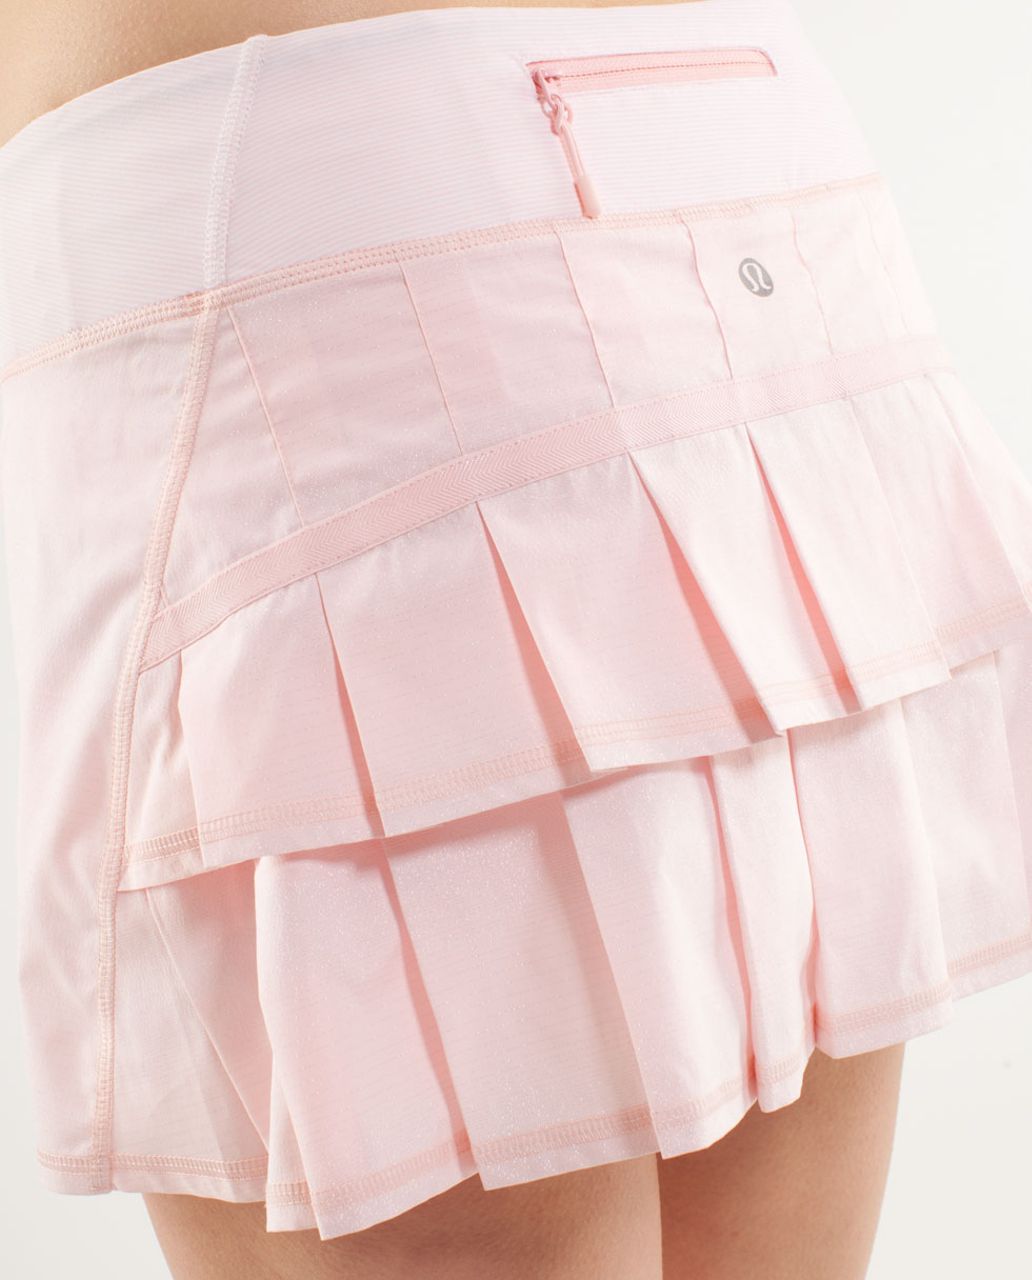 Lululemon Run:  Pace Setter Skirt (Regular) - Blush Quartz /  Wee Stripe White Blush Quartz